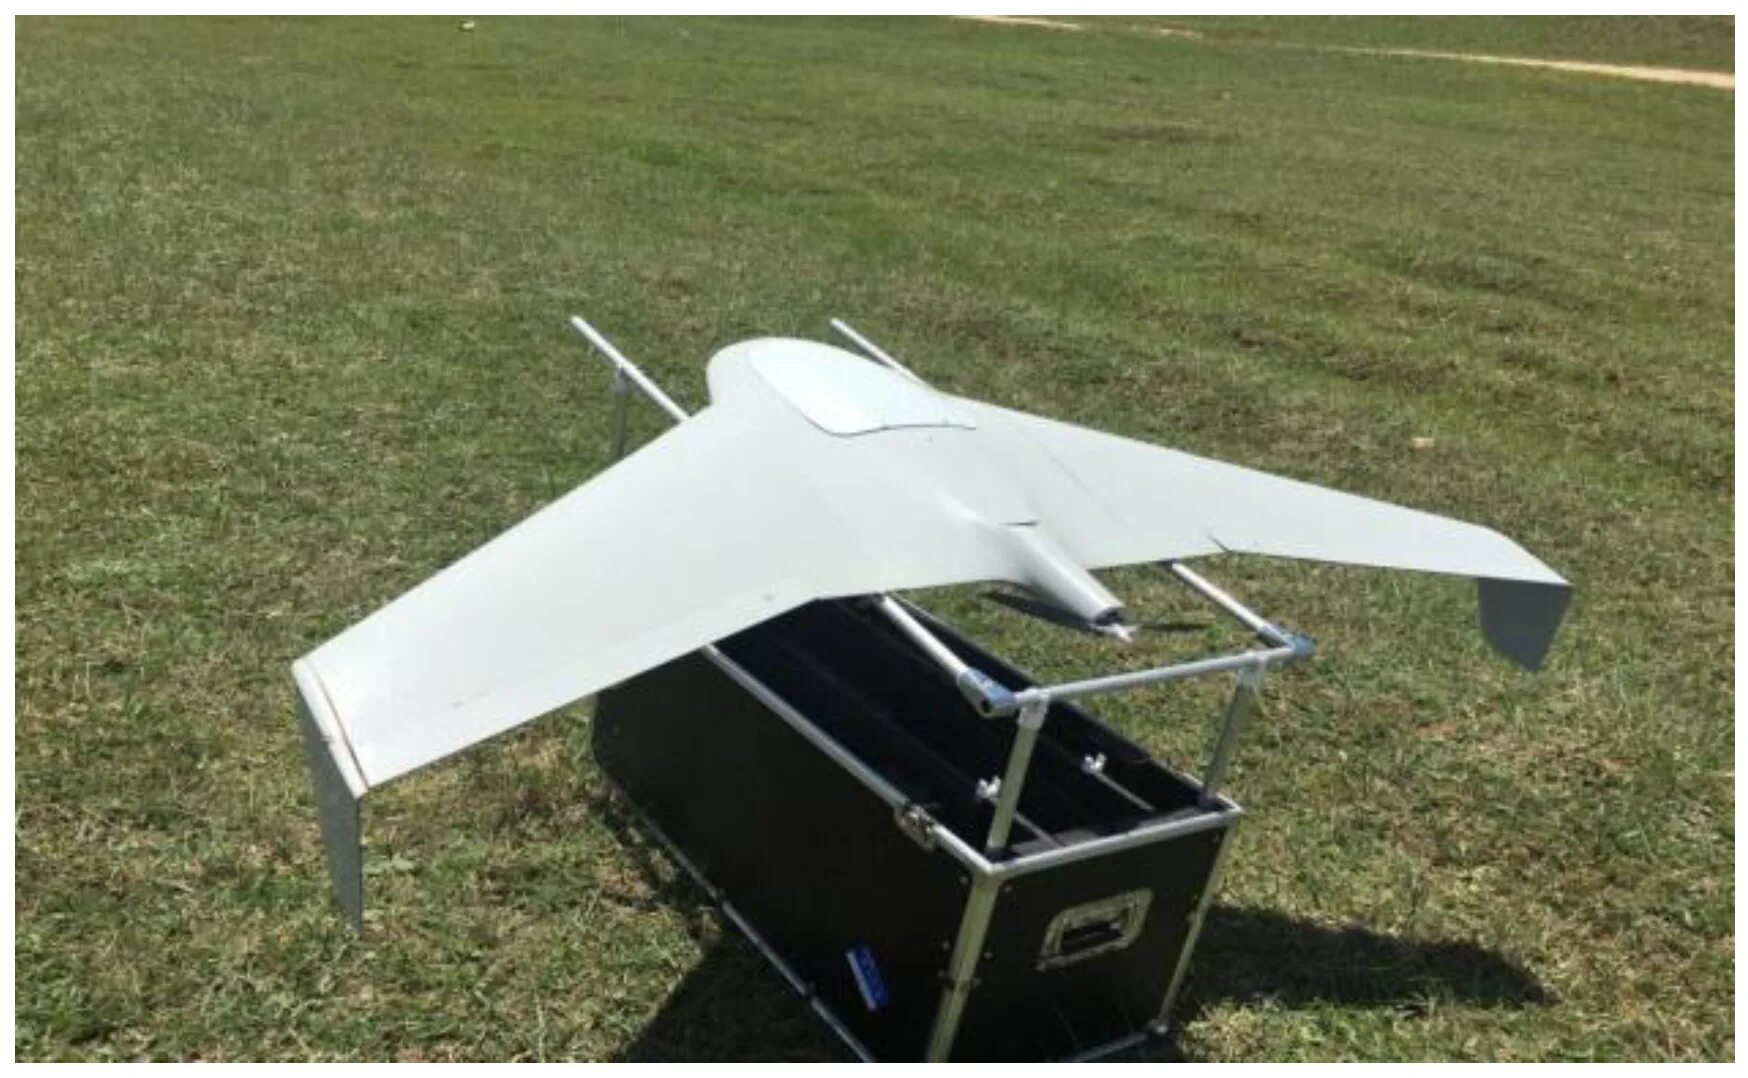 Fixed Wing UAV. Silverwing БПЛА. Стрикс беспилотный летательный аппарат. Игрушечный самолет беспилотник с складными крыльями. Самолет wings купить